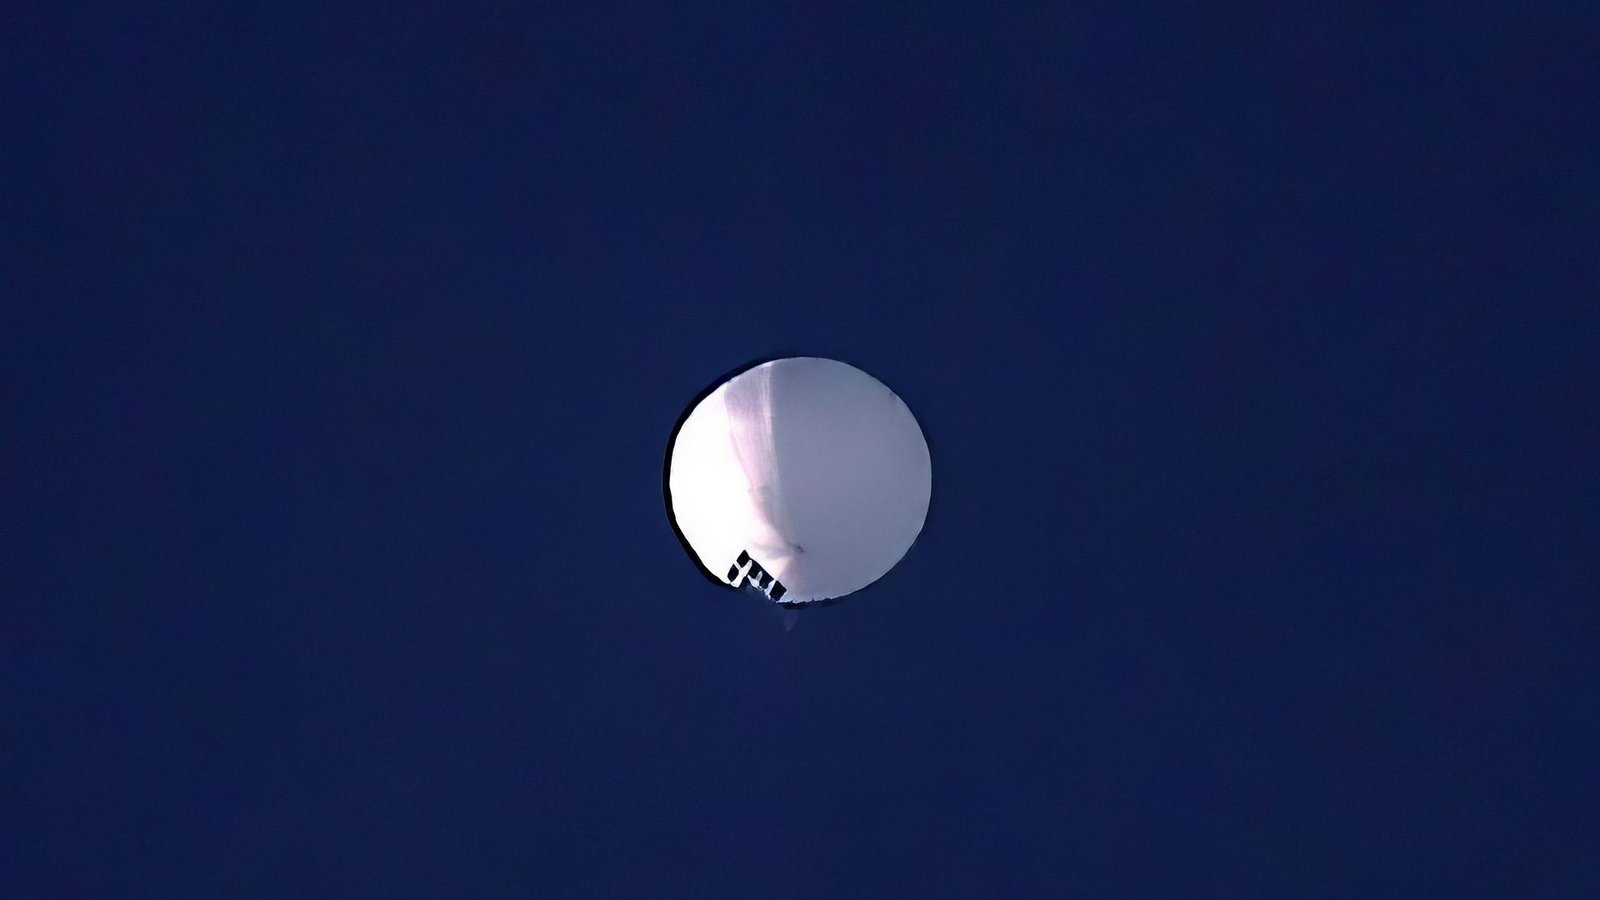 Das US-Militär hat über dem Norden der USA  einen chinesischen Spionageballon gesichtet. Die Flugbahn des Ballons wird laut Pentagon genau verfolgt. Eeine militärische Bedrohung oder Gefahr für Menschen am Boden gebe es jedoch nicht.Foto: Larry Mayer/The Billings Gazette/AP/dpa